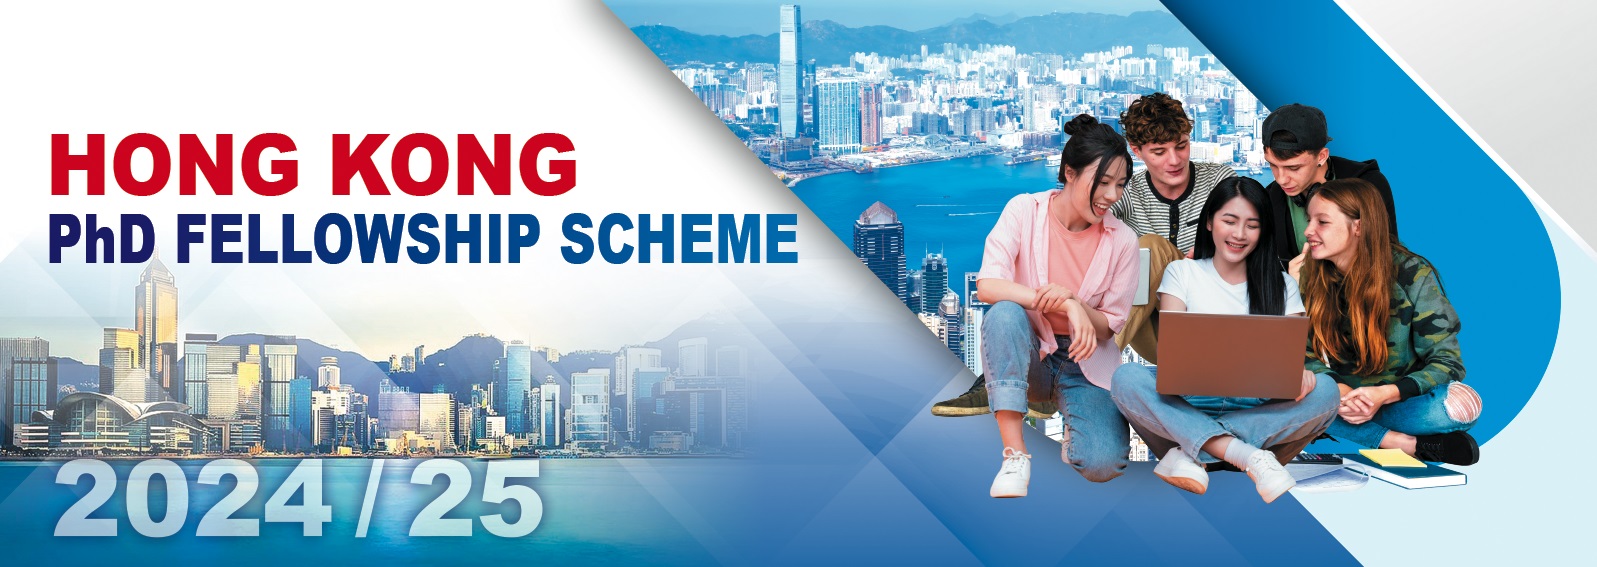 Hong Kong PhD Fellowships Scheme